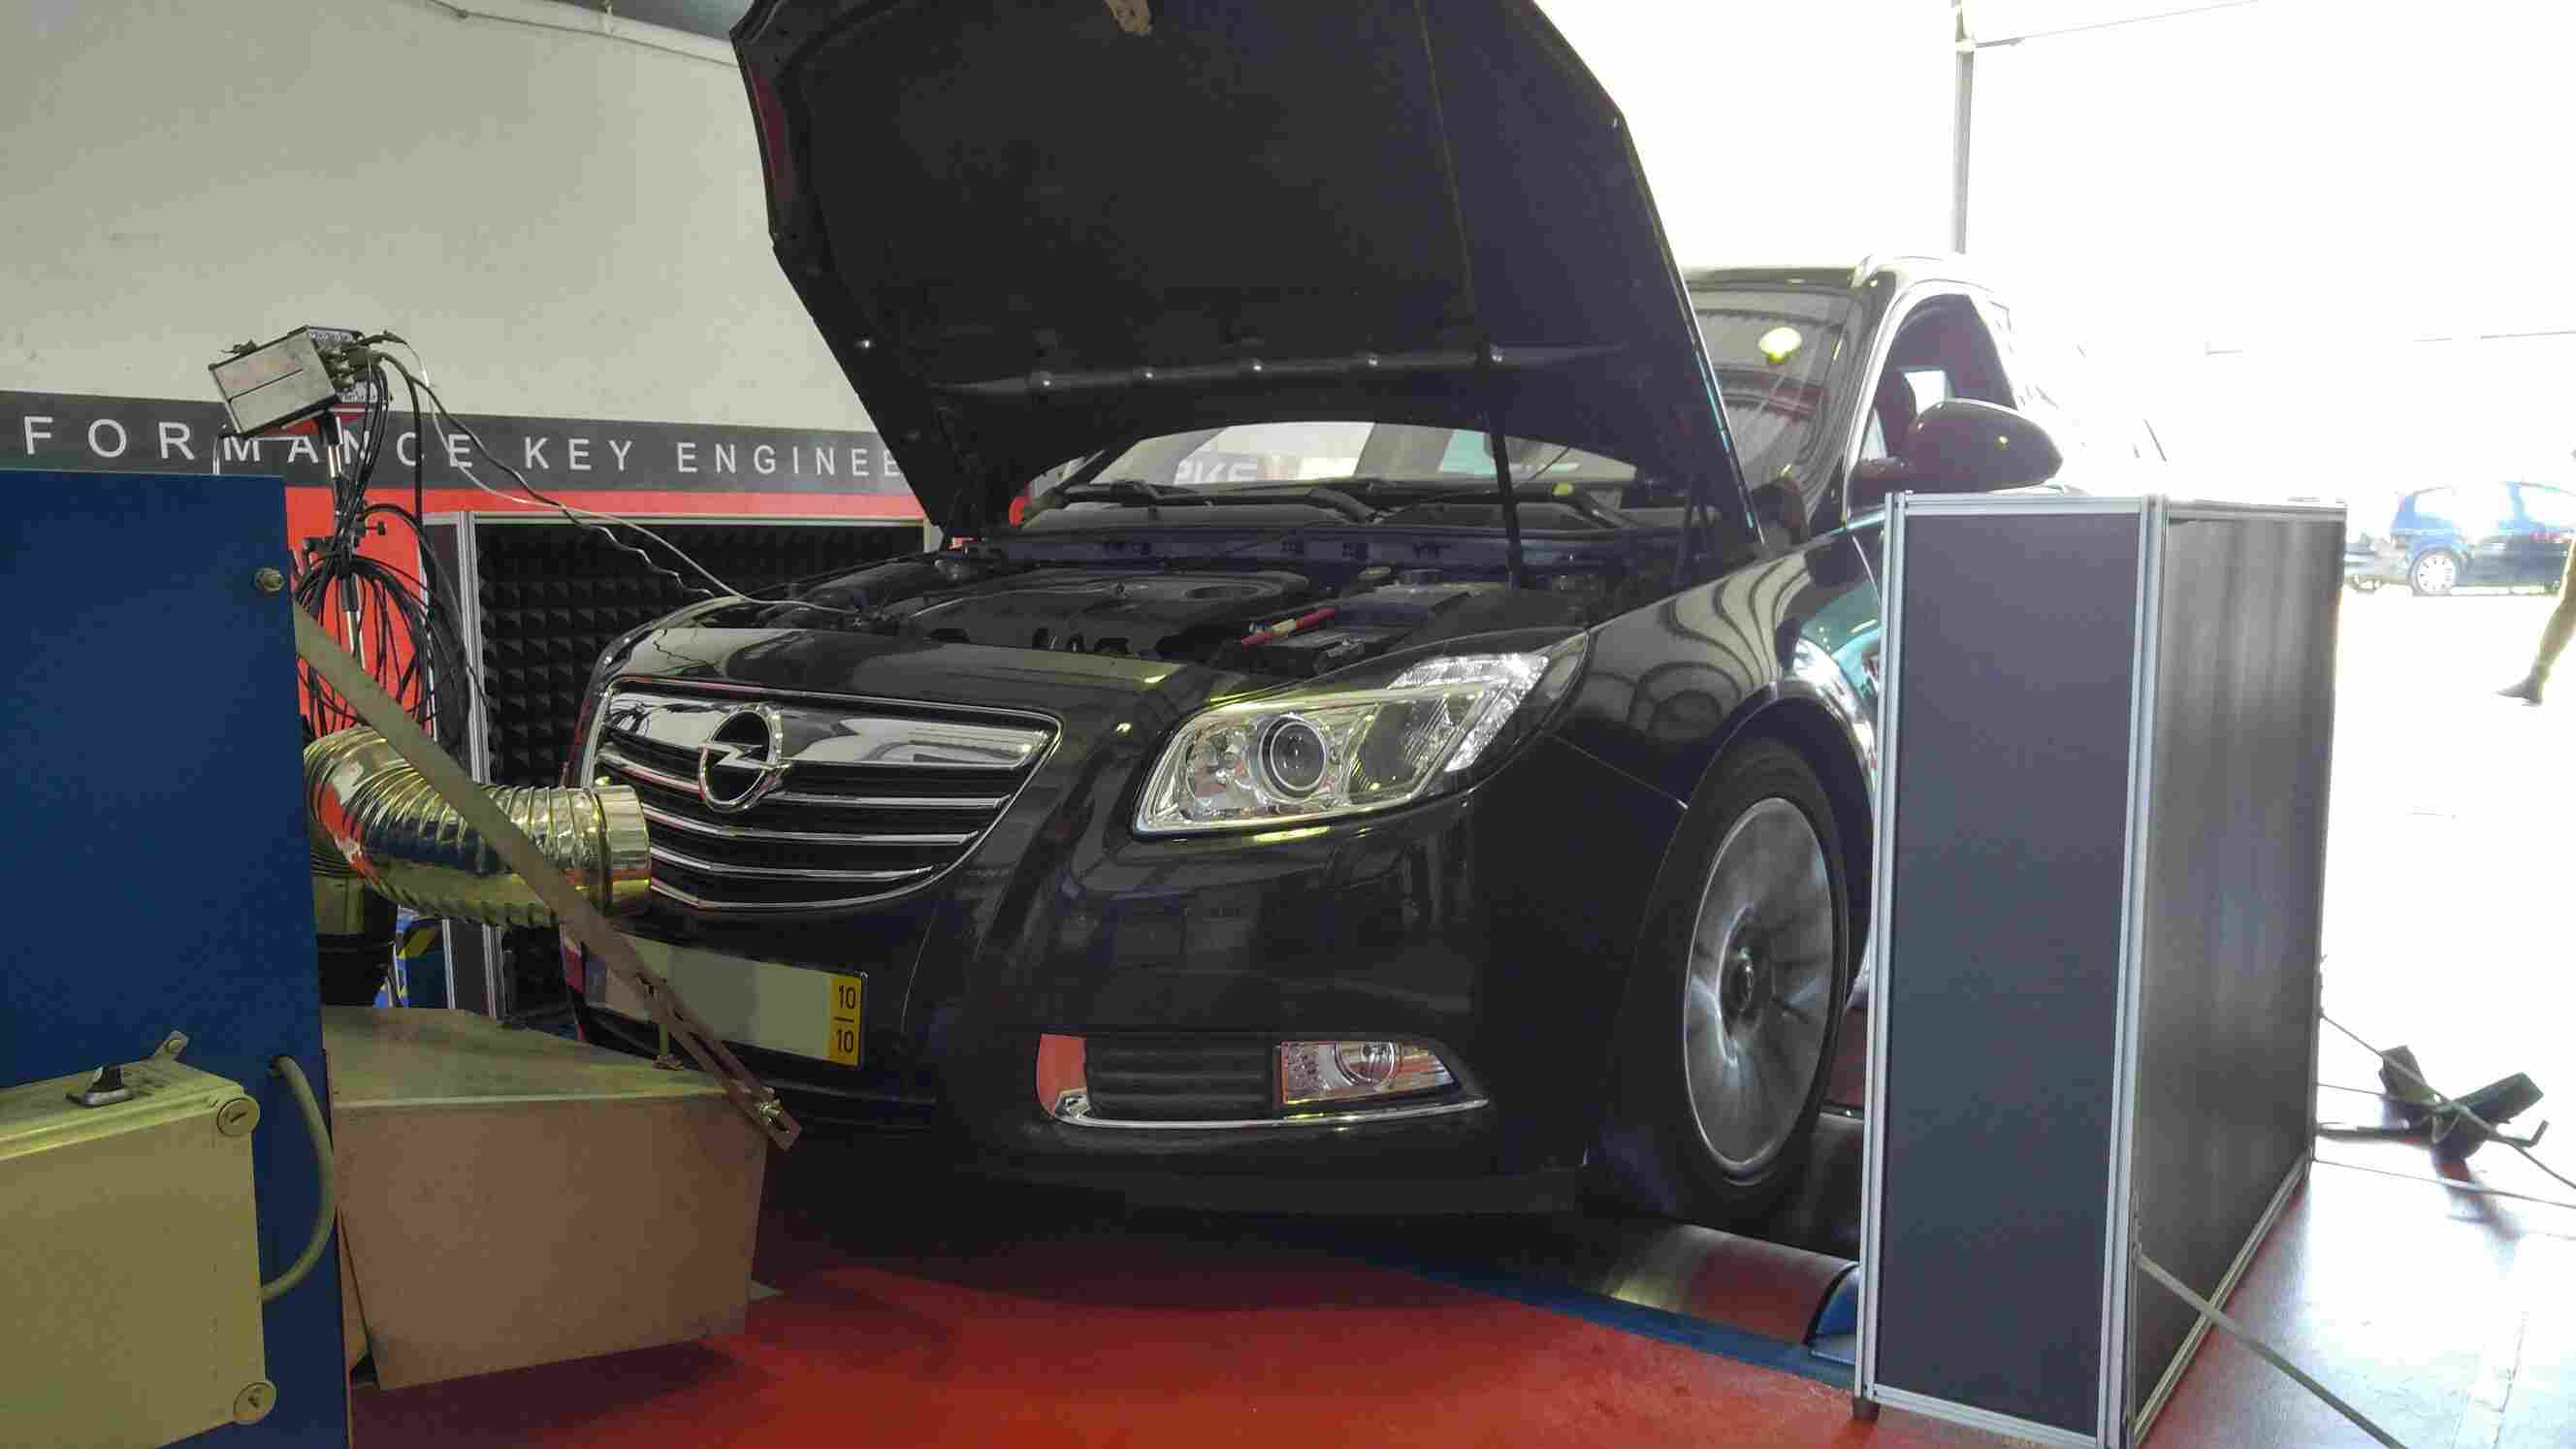 PKE FlexDRIVE em Opel Insignia 2.0 CDti 130cv – 2010